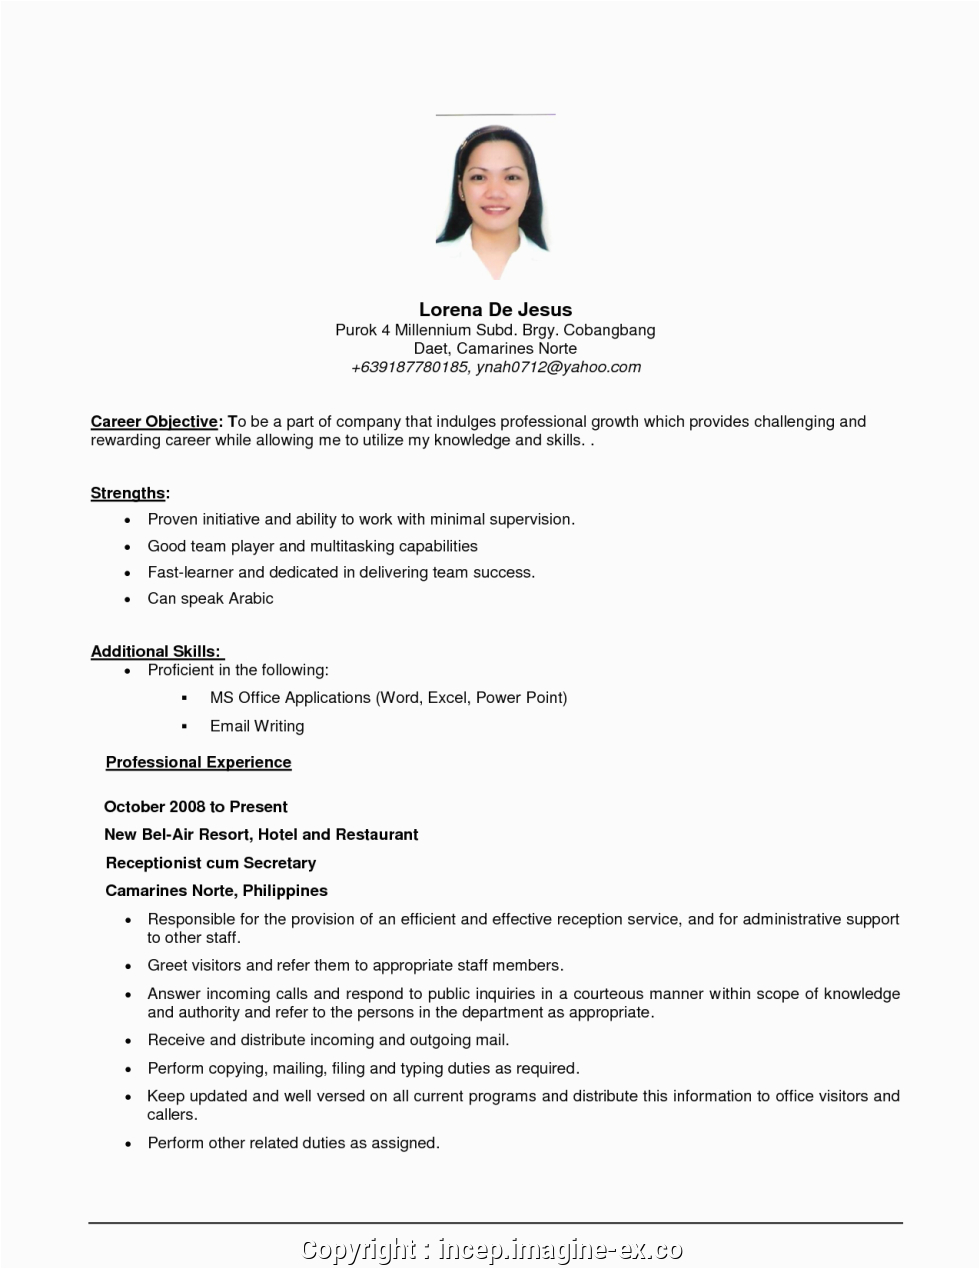 Sample Resume Applying for Any Position Best Sample Objective In Resume for Any Position Objective